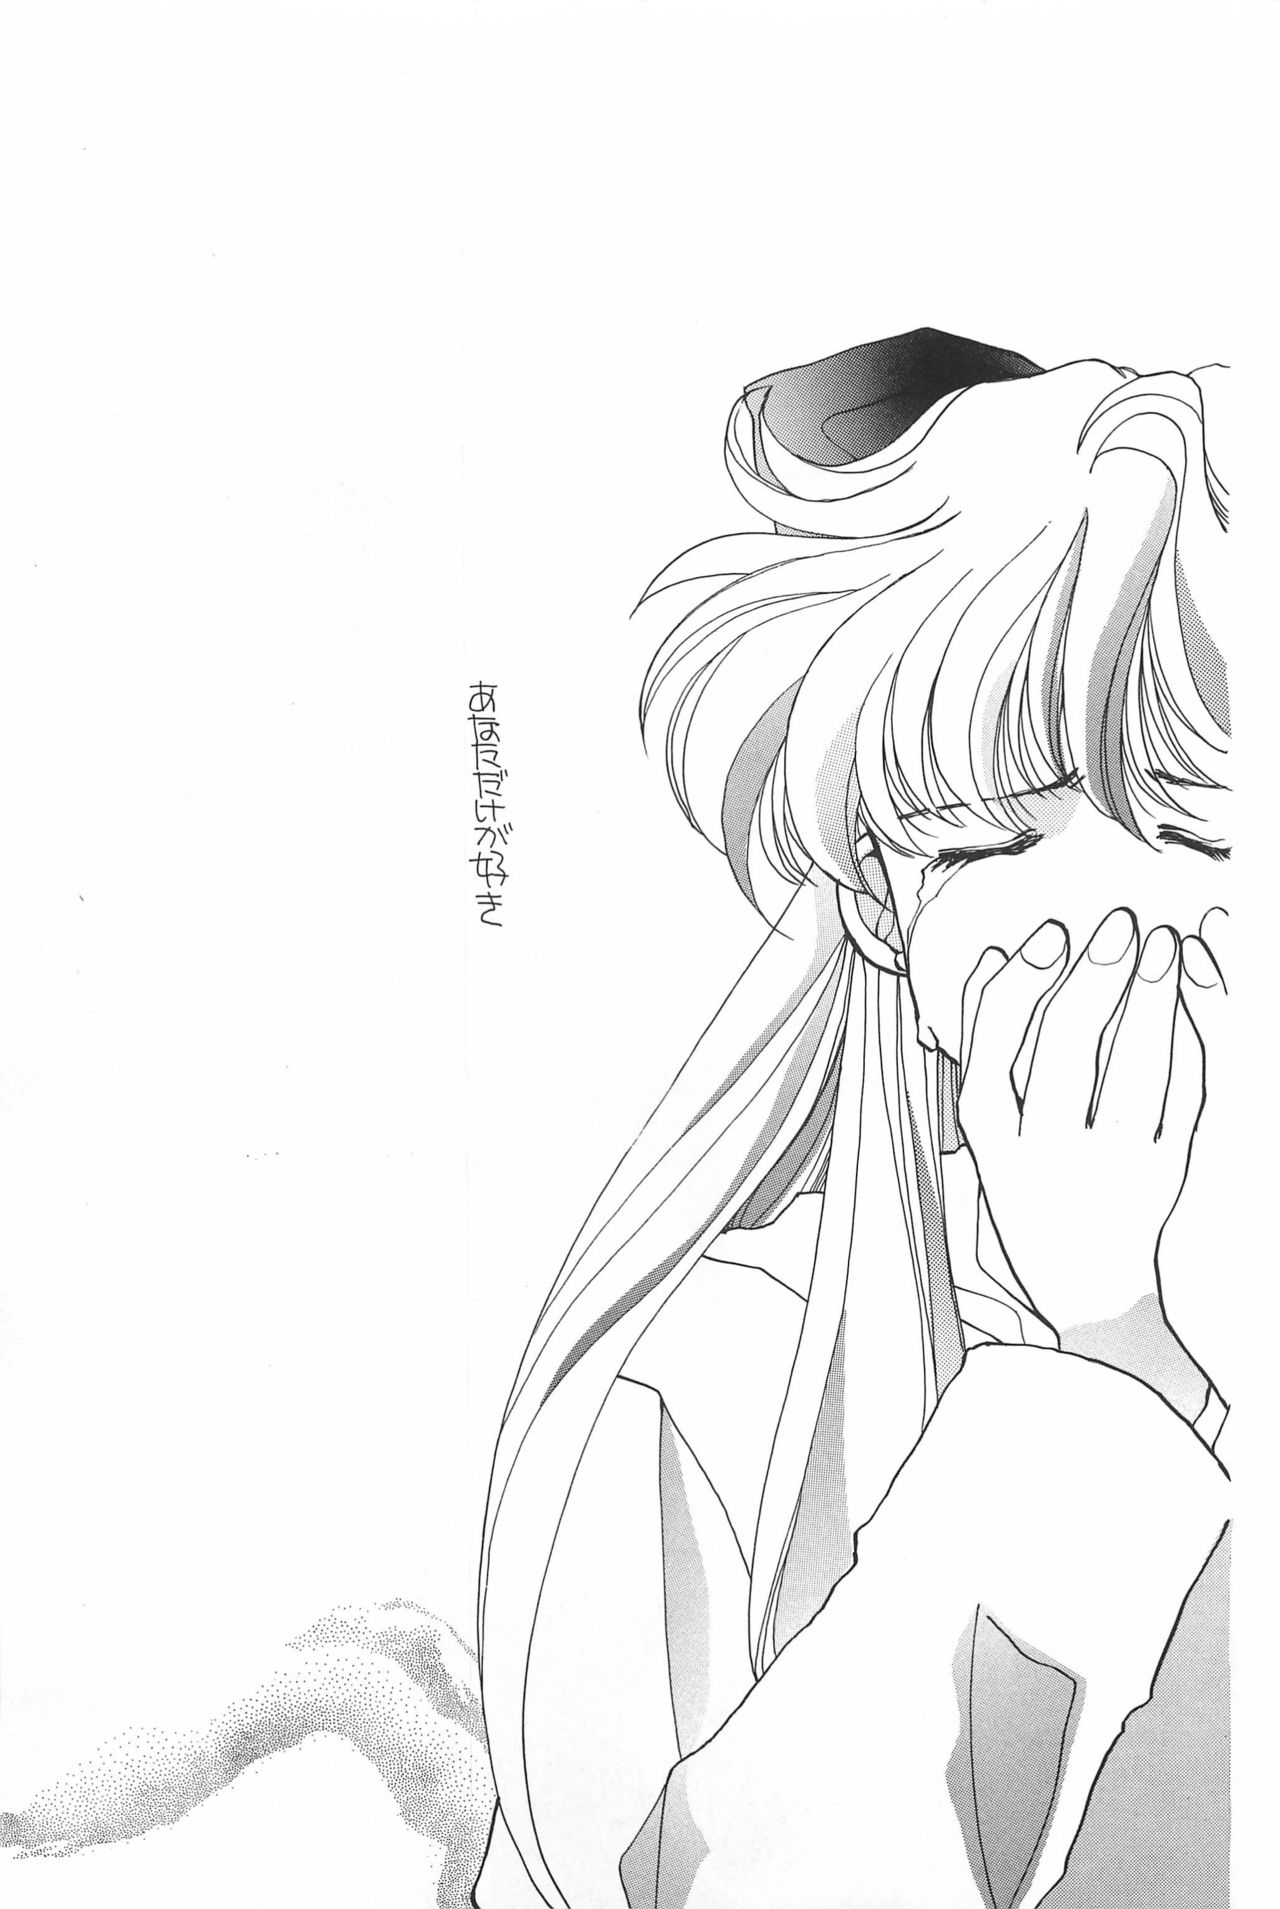 [Hello World (Muttri Moony)] Kaze no You ni Yume no You ni - Sailor Moon Collection (Sailor Moon) 90